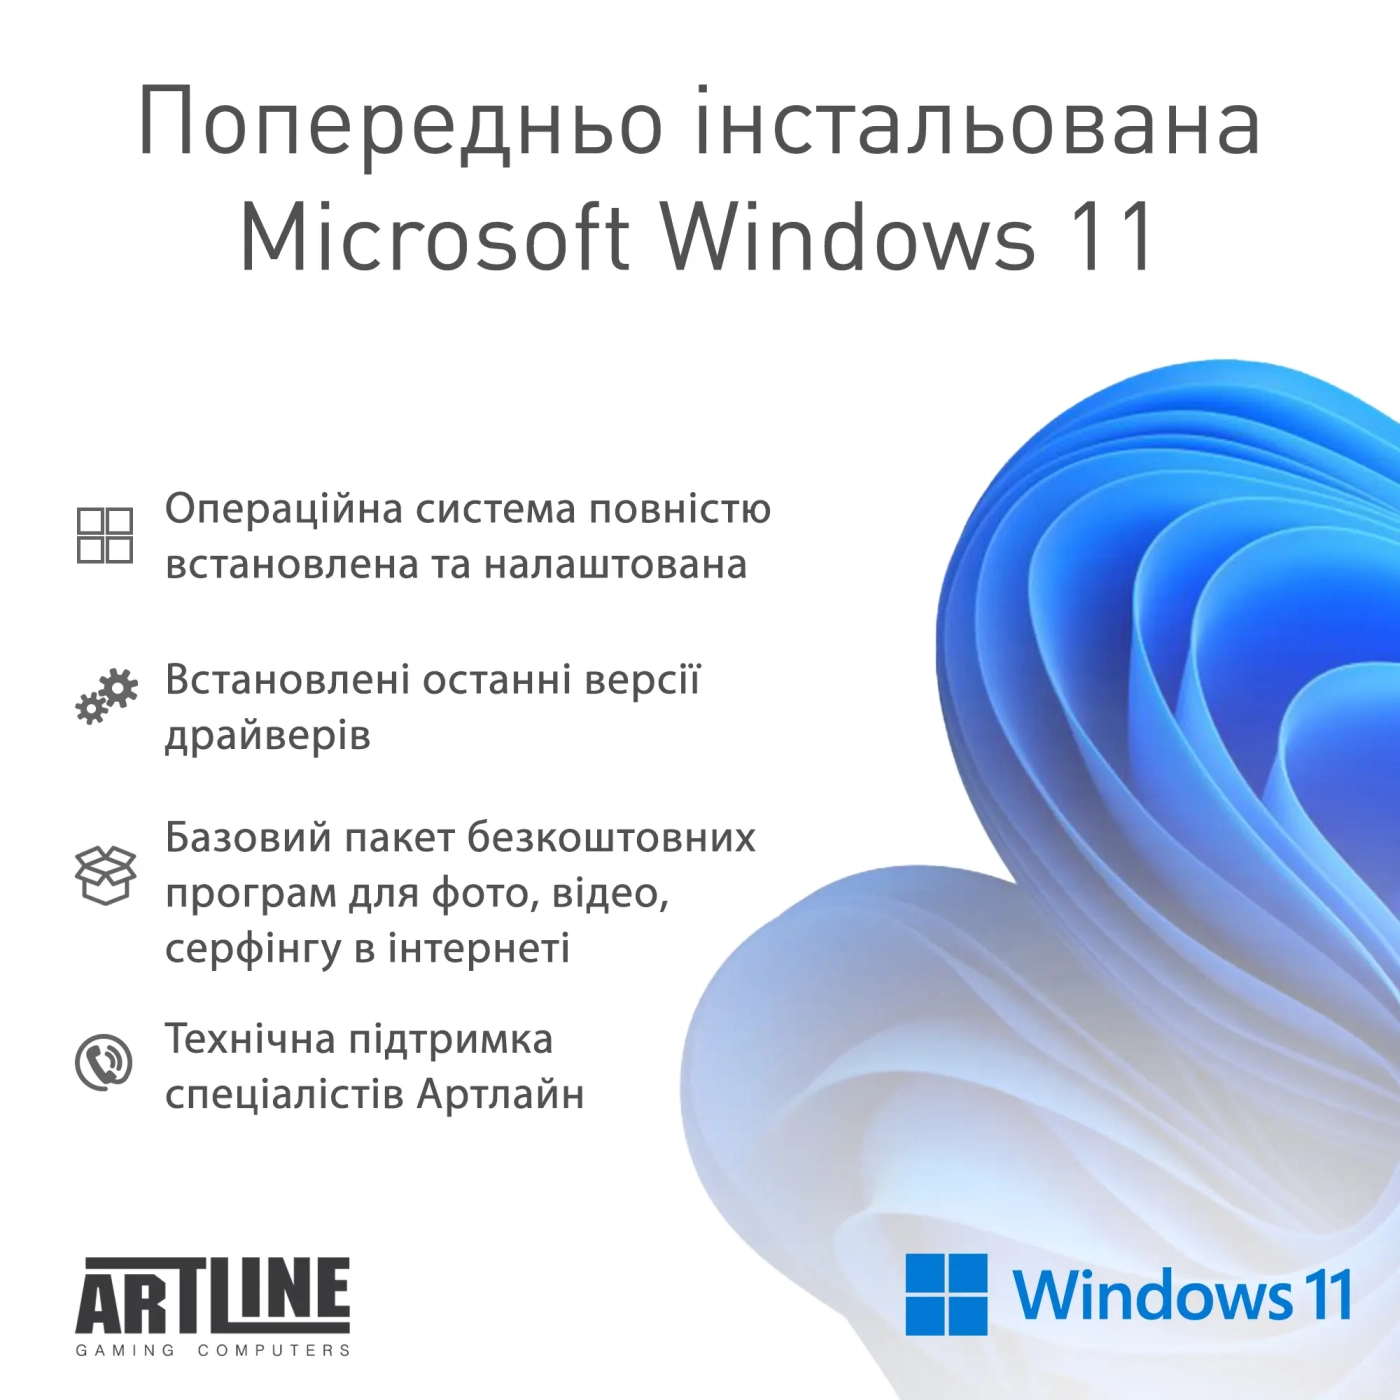 Купить Компьютер ARTLINE Gaming D31 Windows 11 Home (D31v48Win) - фото 12